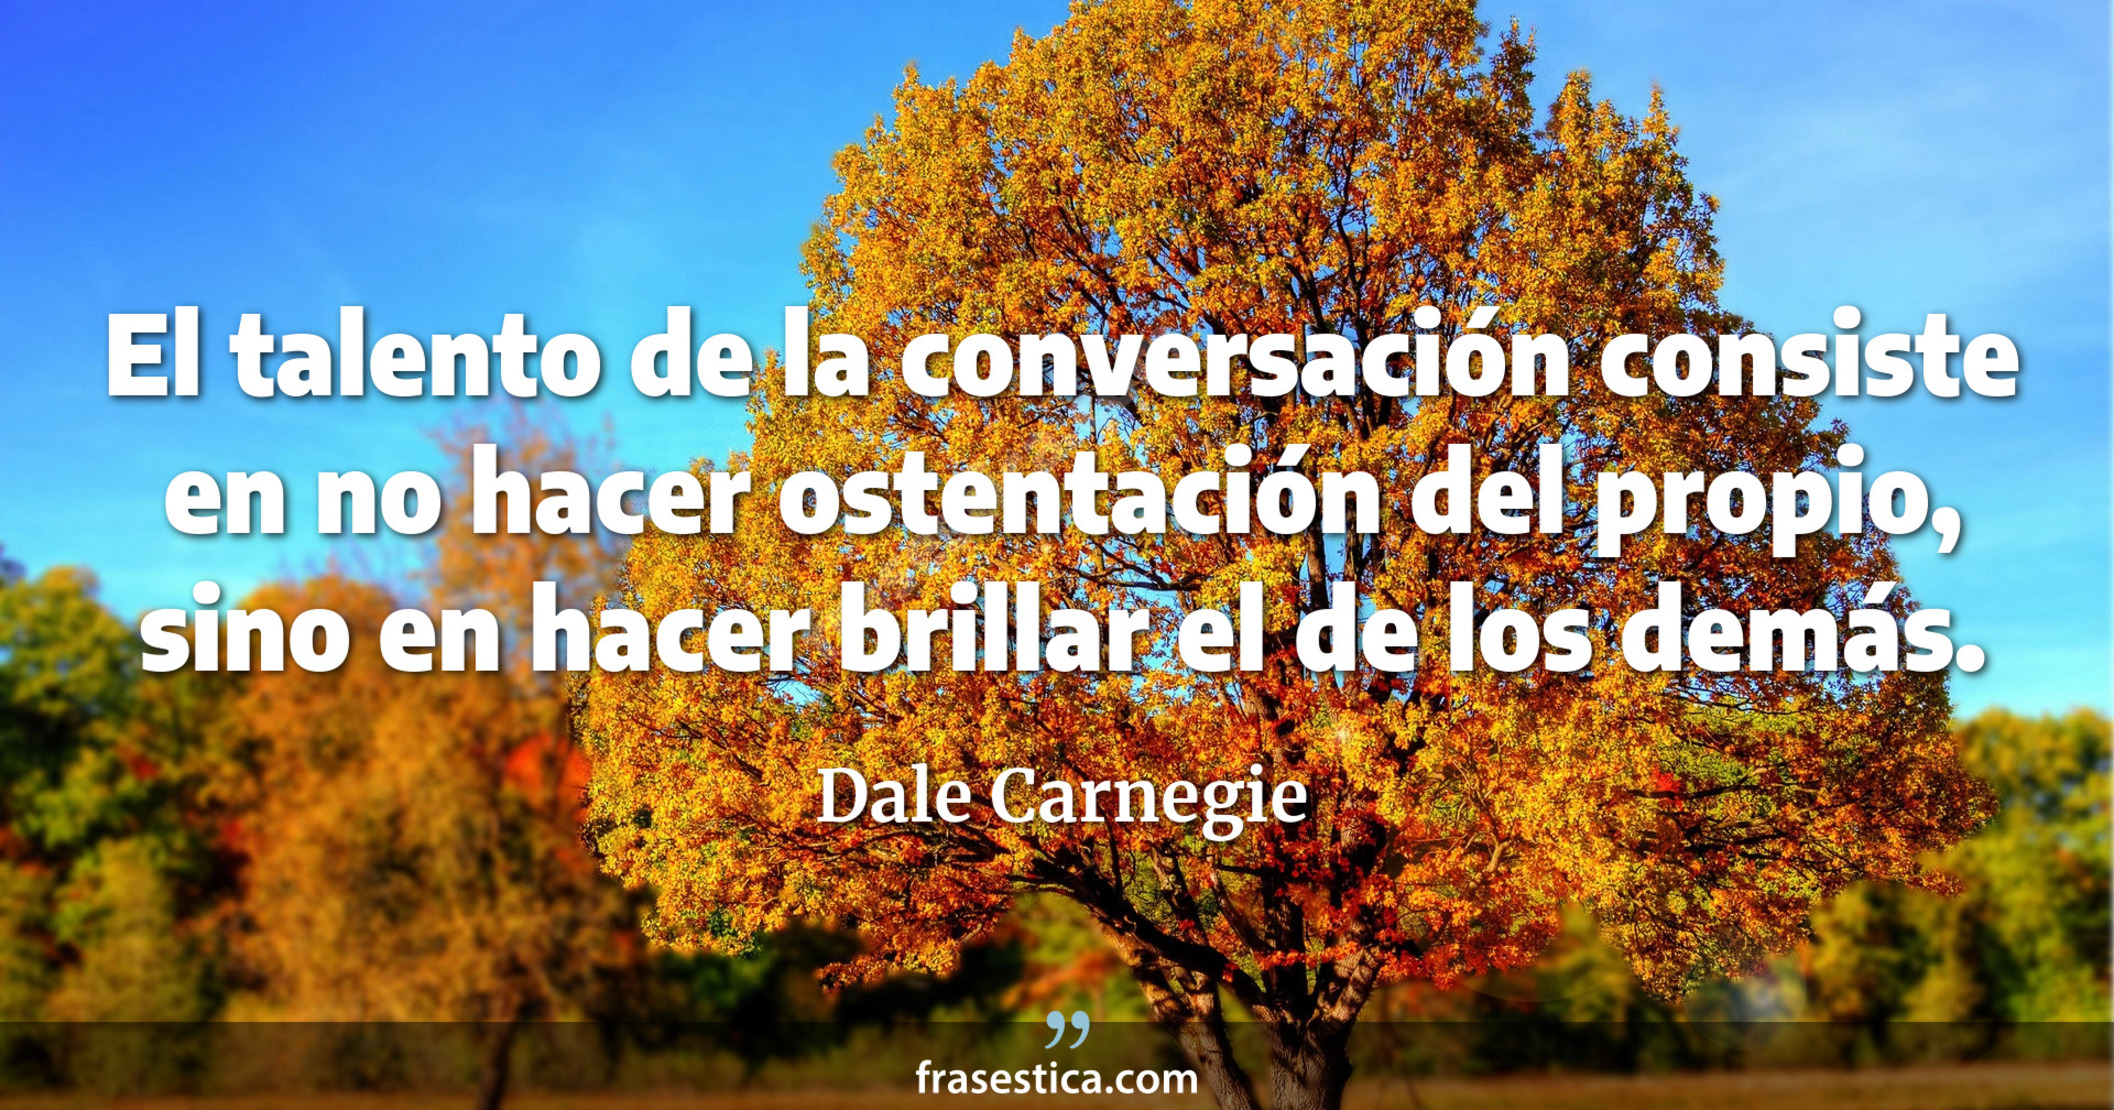 El talento de la conversación consiste en no hacer ostentación del propio, sino en hacer brillar el de los demás. - Dale Carnegie